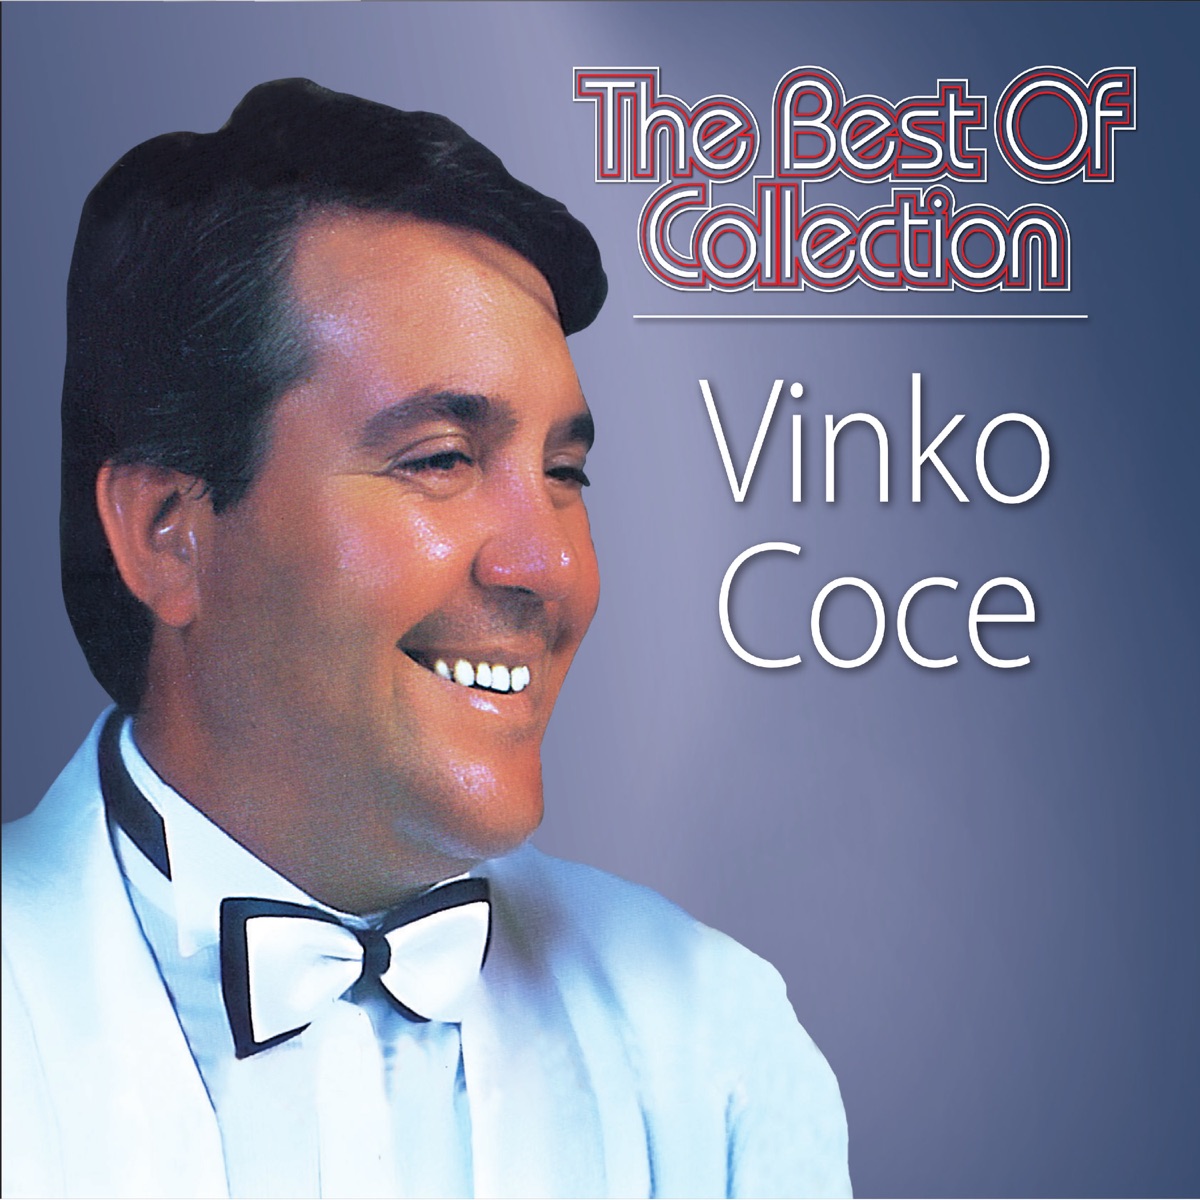 50 Originalnih Pjesama - Album by Vinko Coce - Apple Music